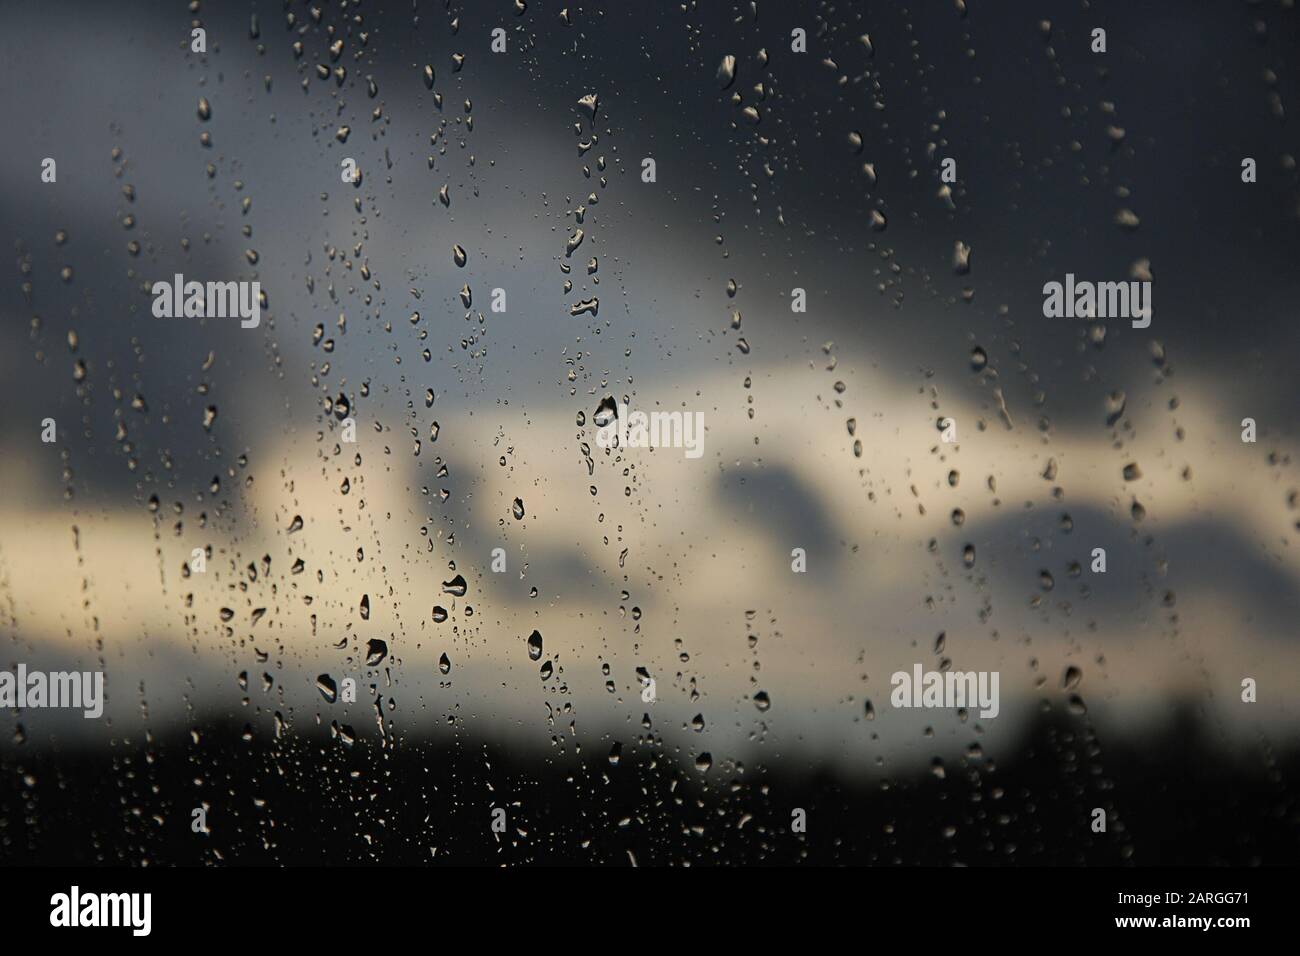 Regentropfen im Fensterbereich. Schwarzer, grauer, weißer Farbverlauf auf unscharfem Hintergrund. Bewölktes Regenwetter außerhalb des Fensters. Kühlung, Regen, schlechtes Wetter Stockfoto